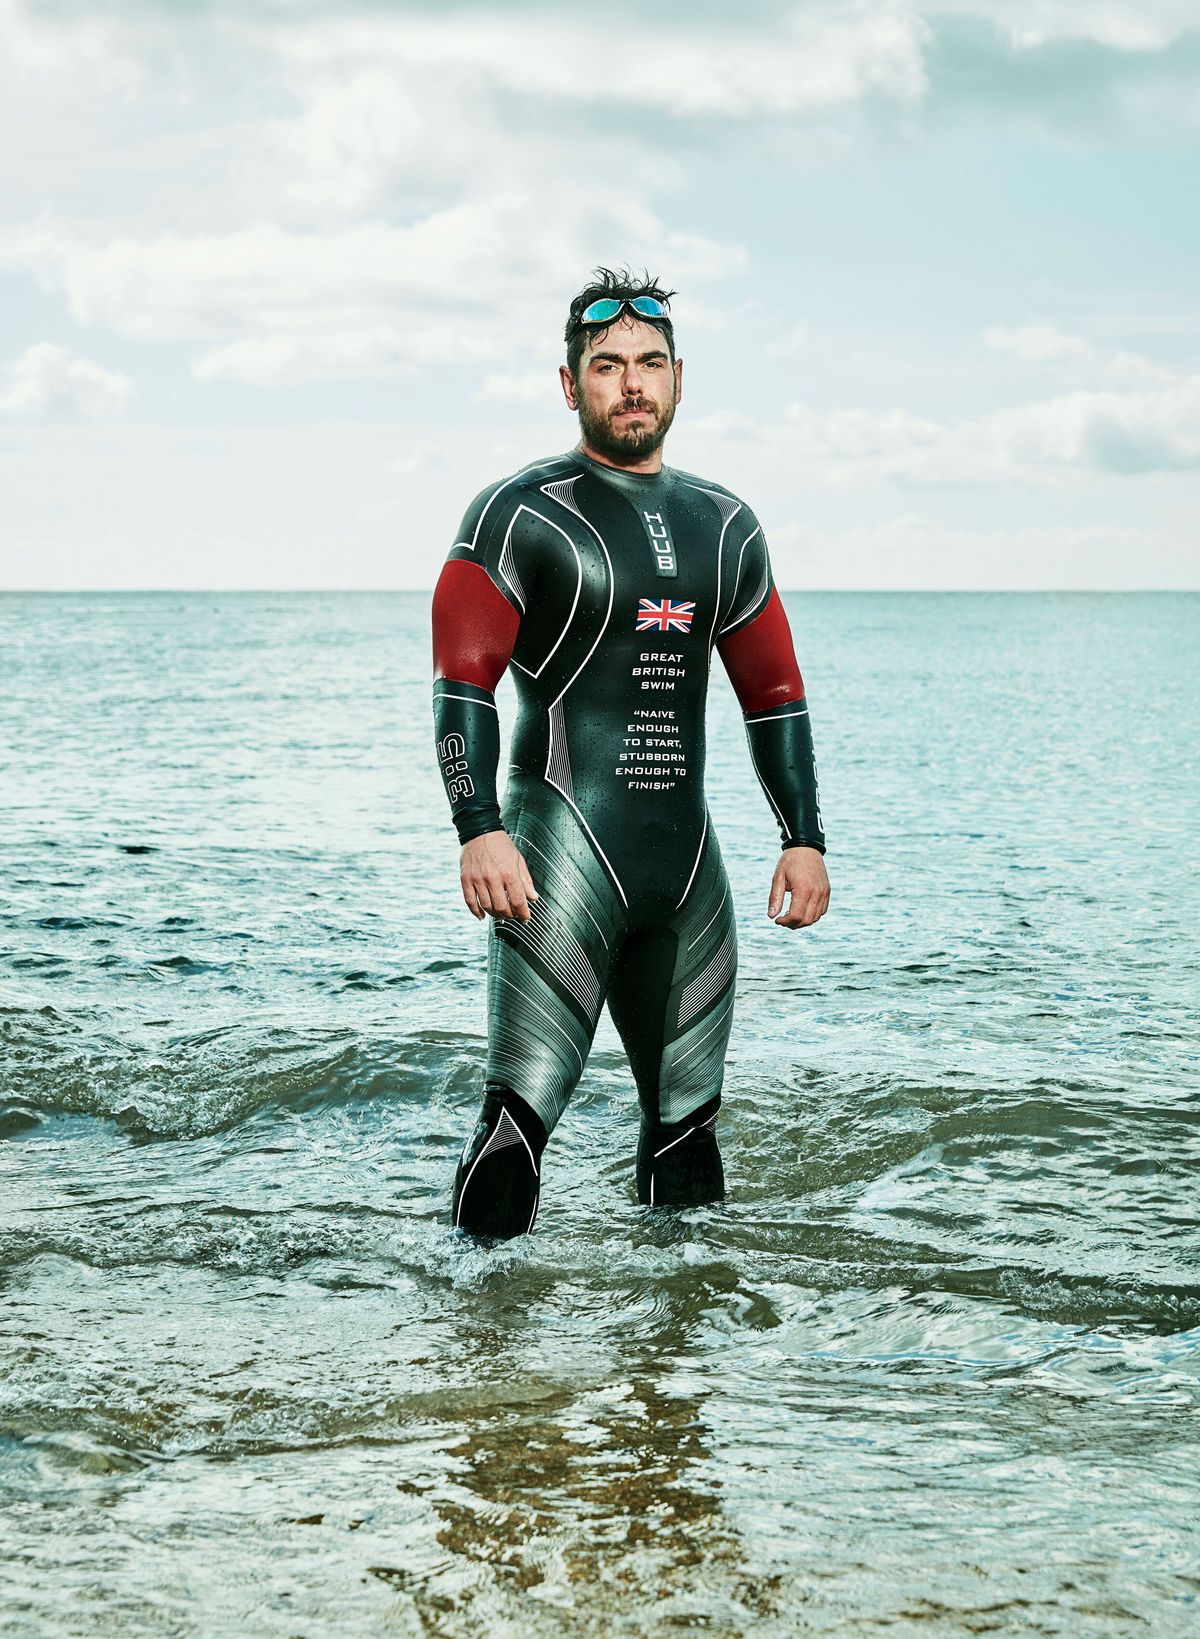 ross edgley in his wetsuit knee deep in the ocean